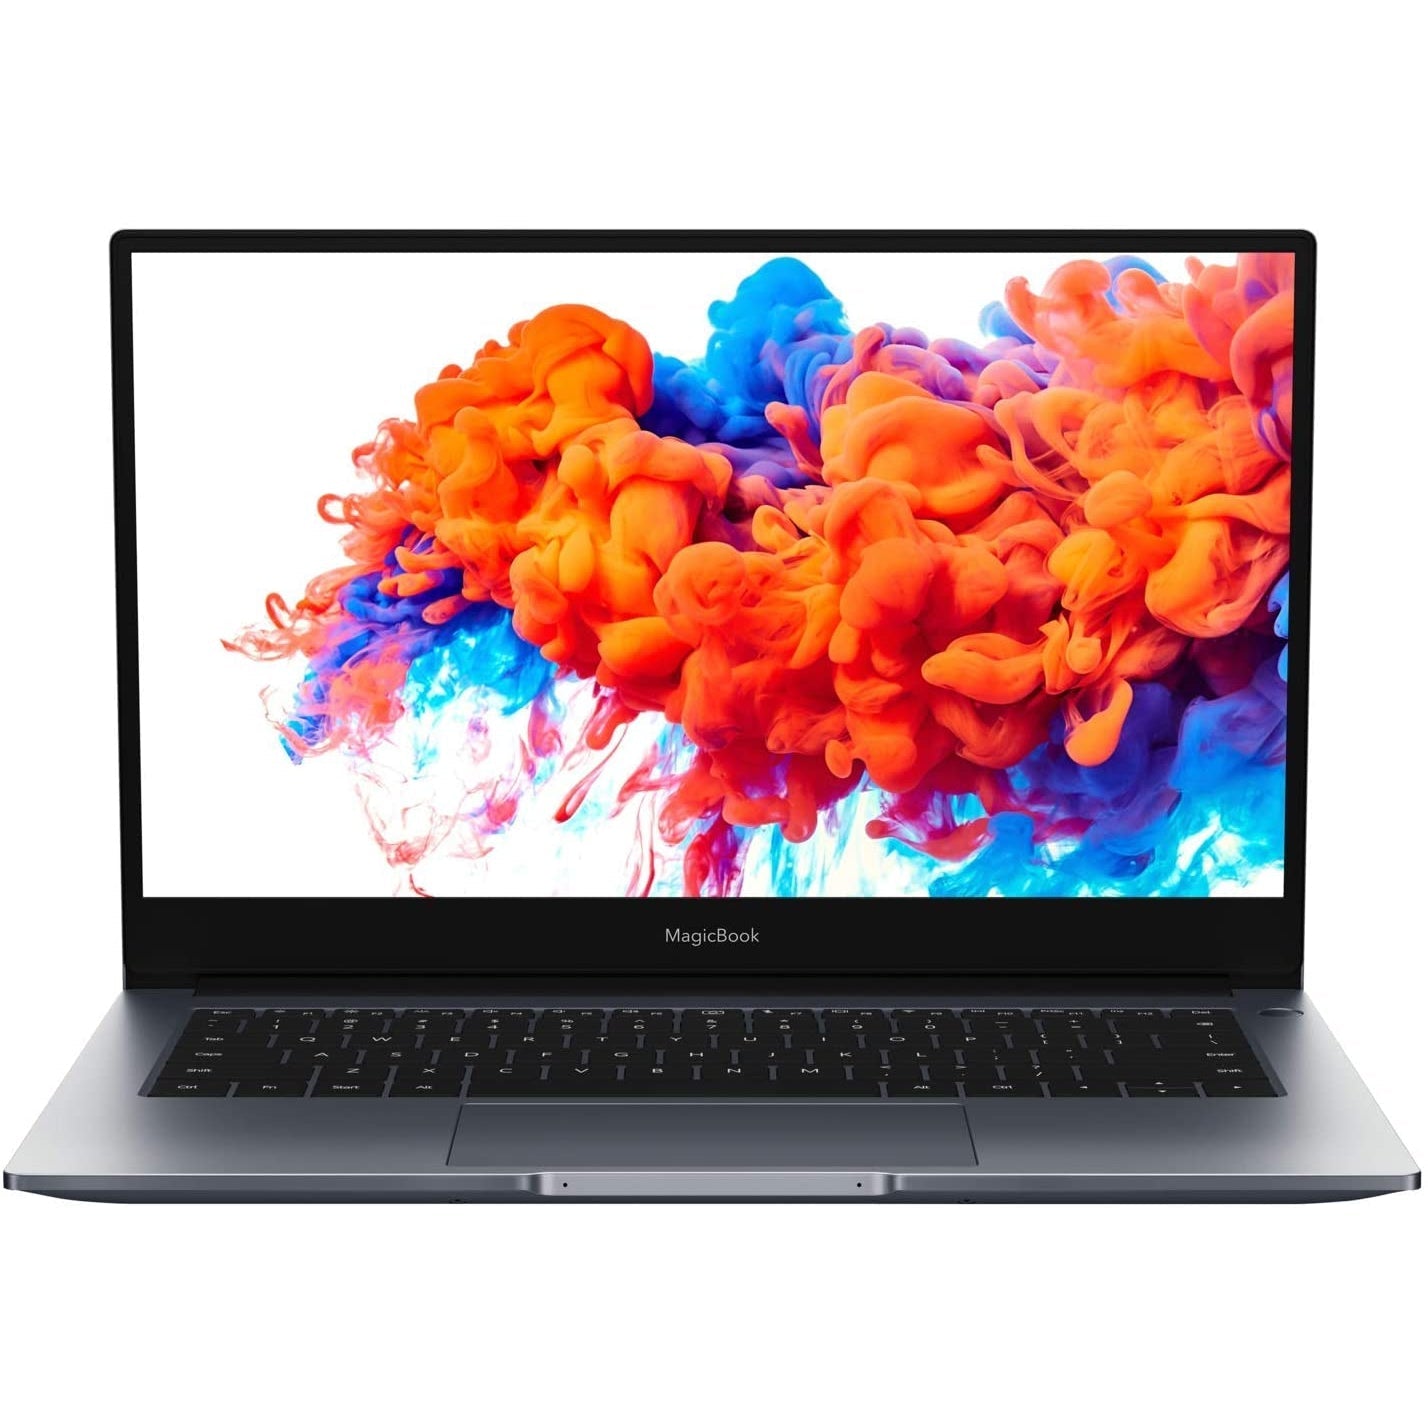 Honor MagicBook 14 inch NBL-WAQ9AHNR Ryzen 5 8GB 256GB Laptop - Grey - Refurbished Pristine